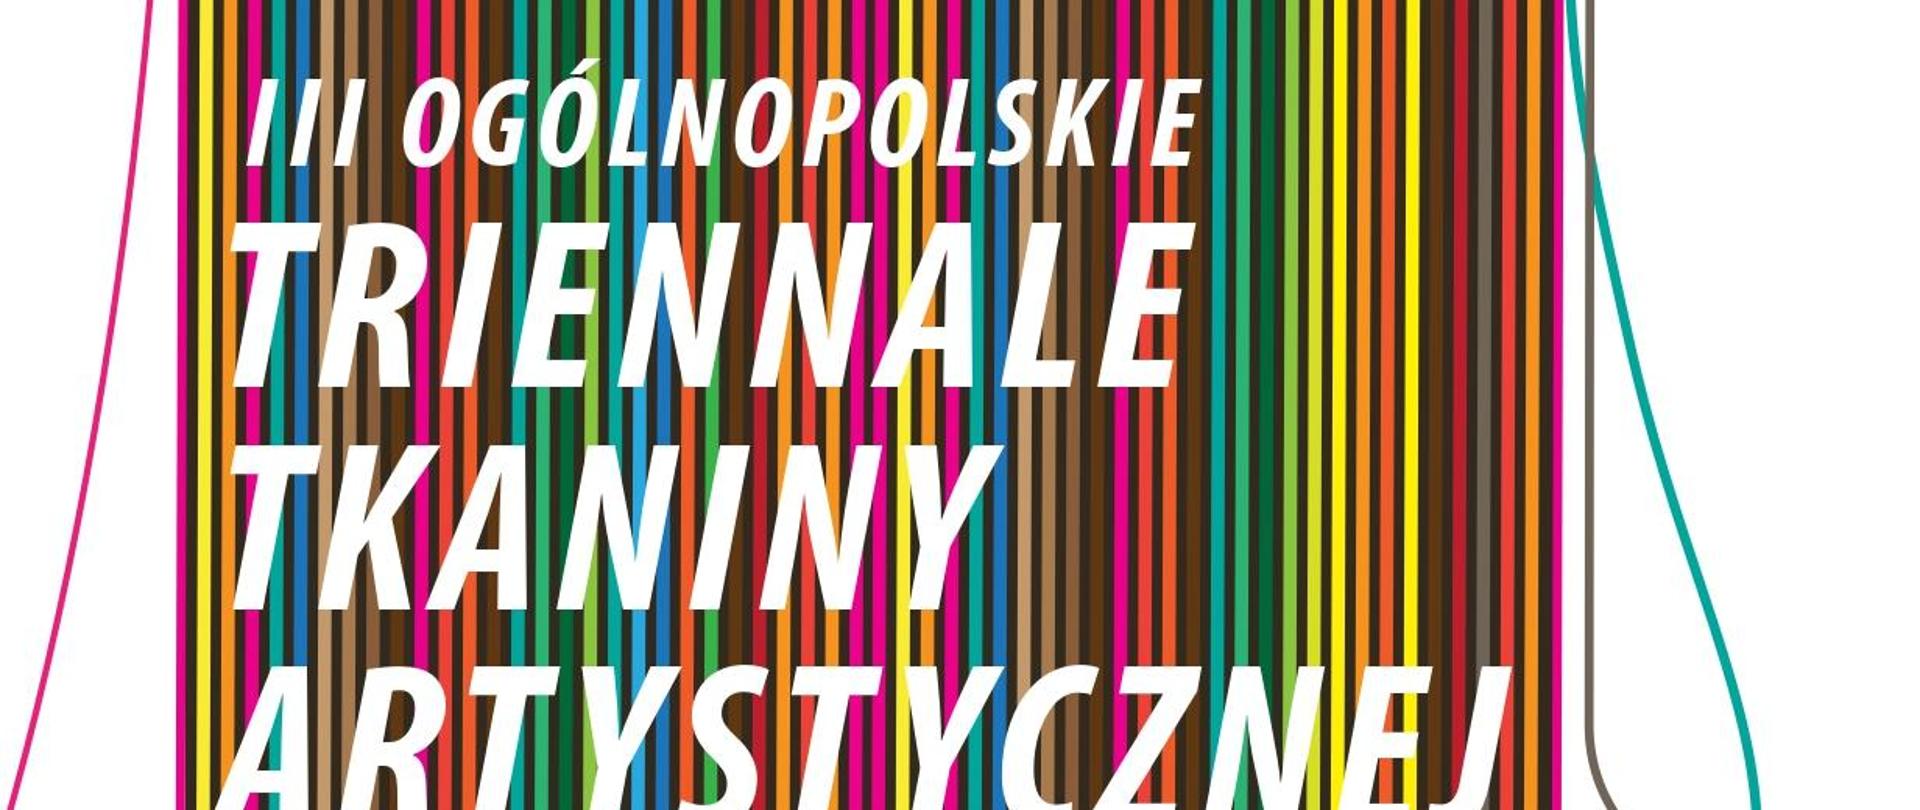 Plakat Ogólnopolskiego Triennale Tkaniny Artystycznej, w tle kolorowe pionowe paski